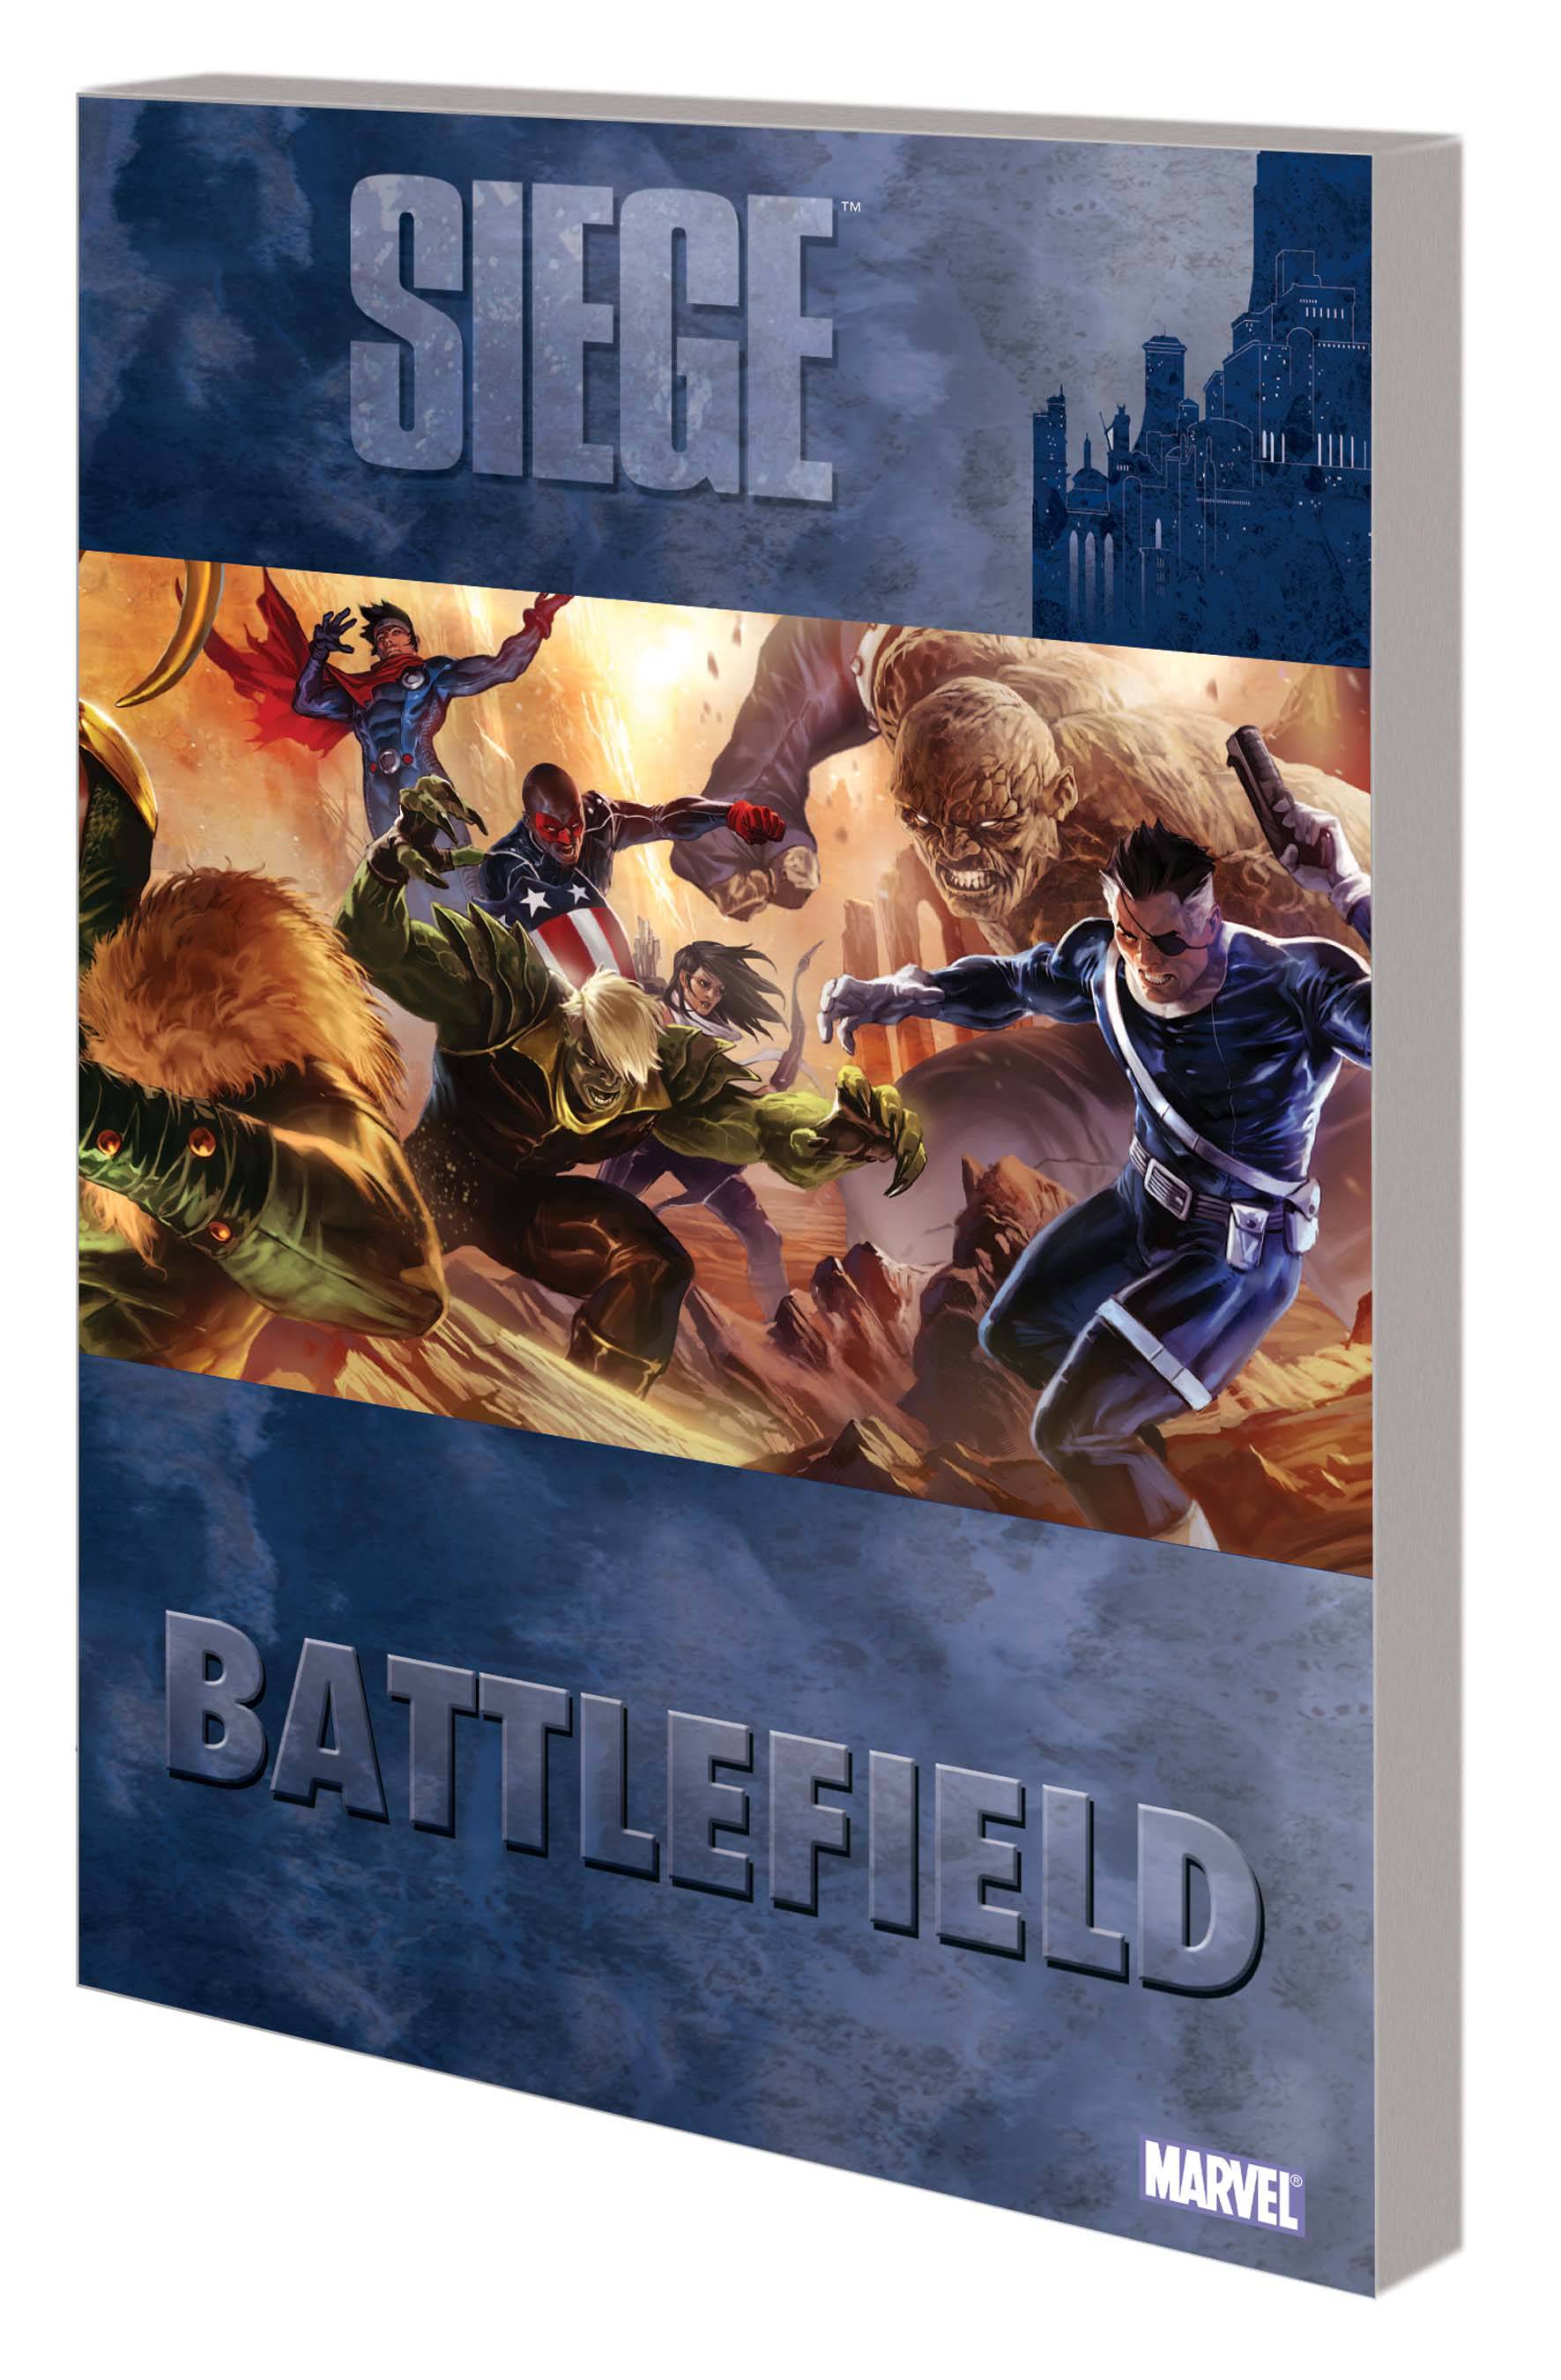 Siege Battlefield (Hardcover)